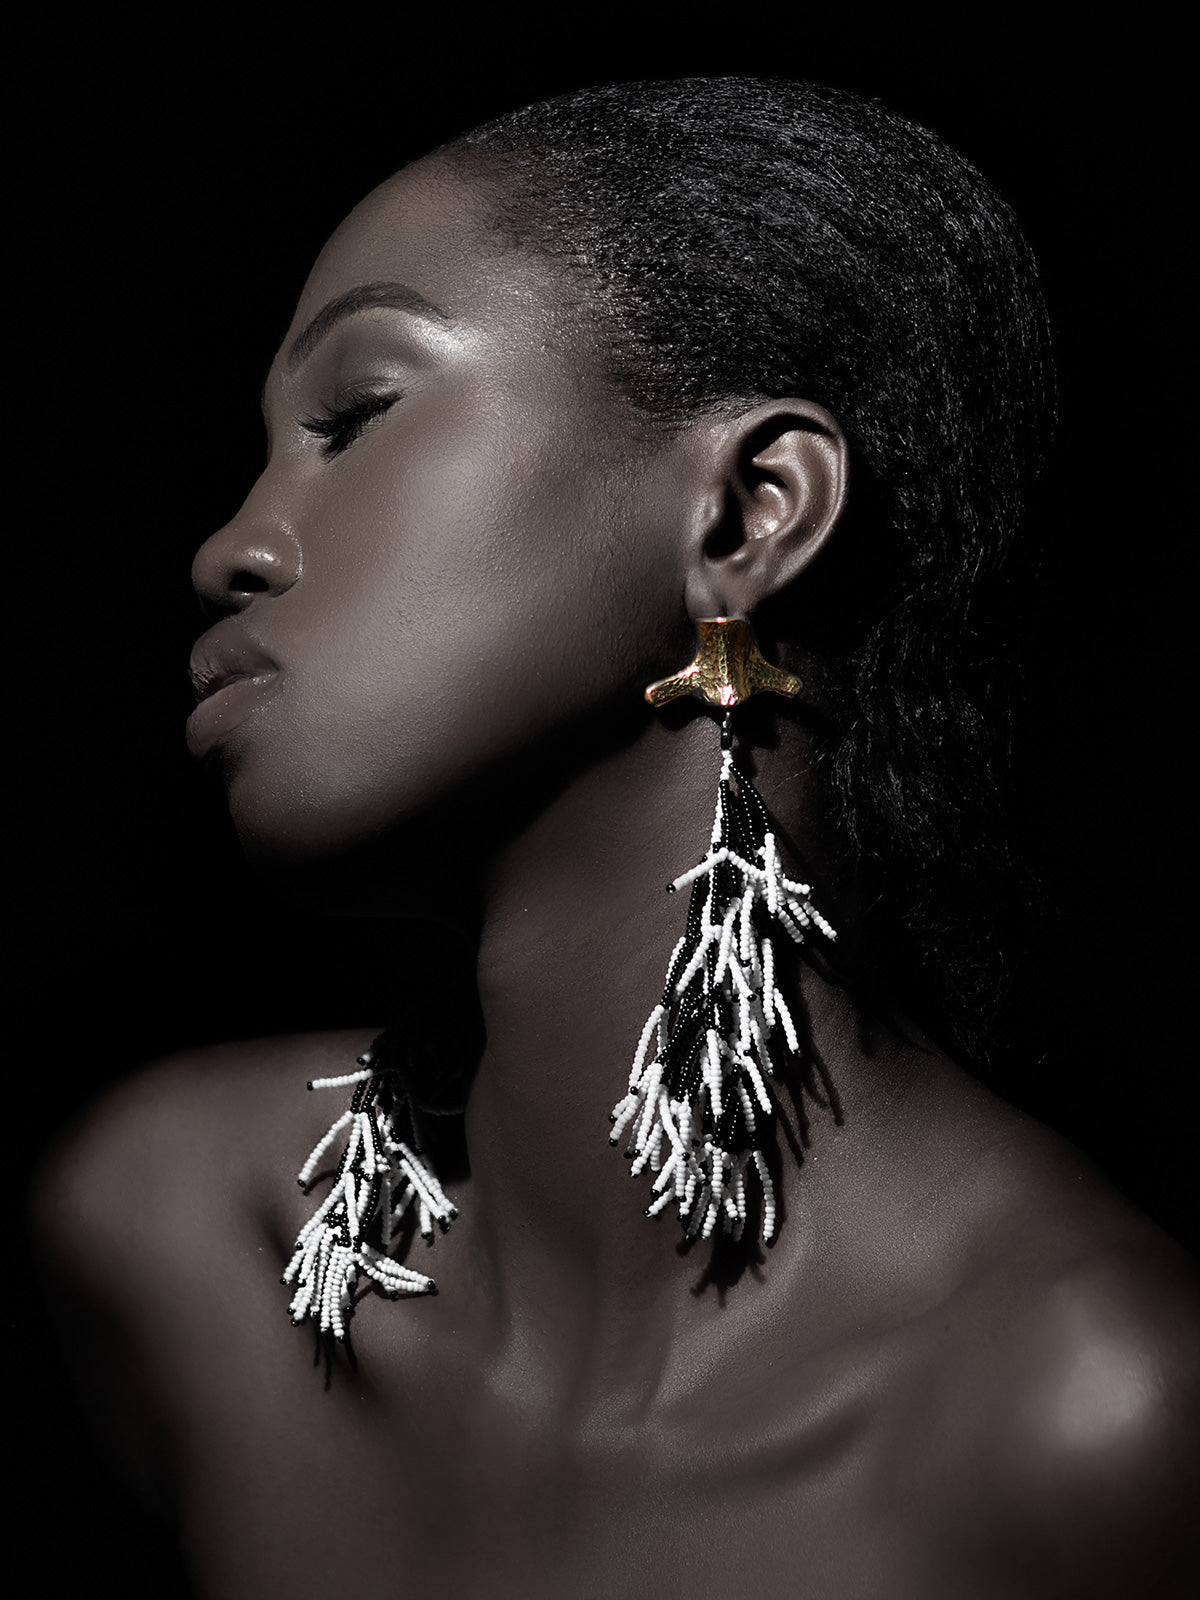 Black & White Yatta Fringe Earrings